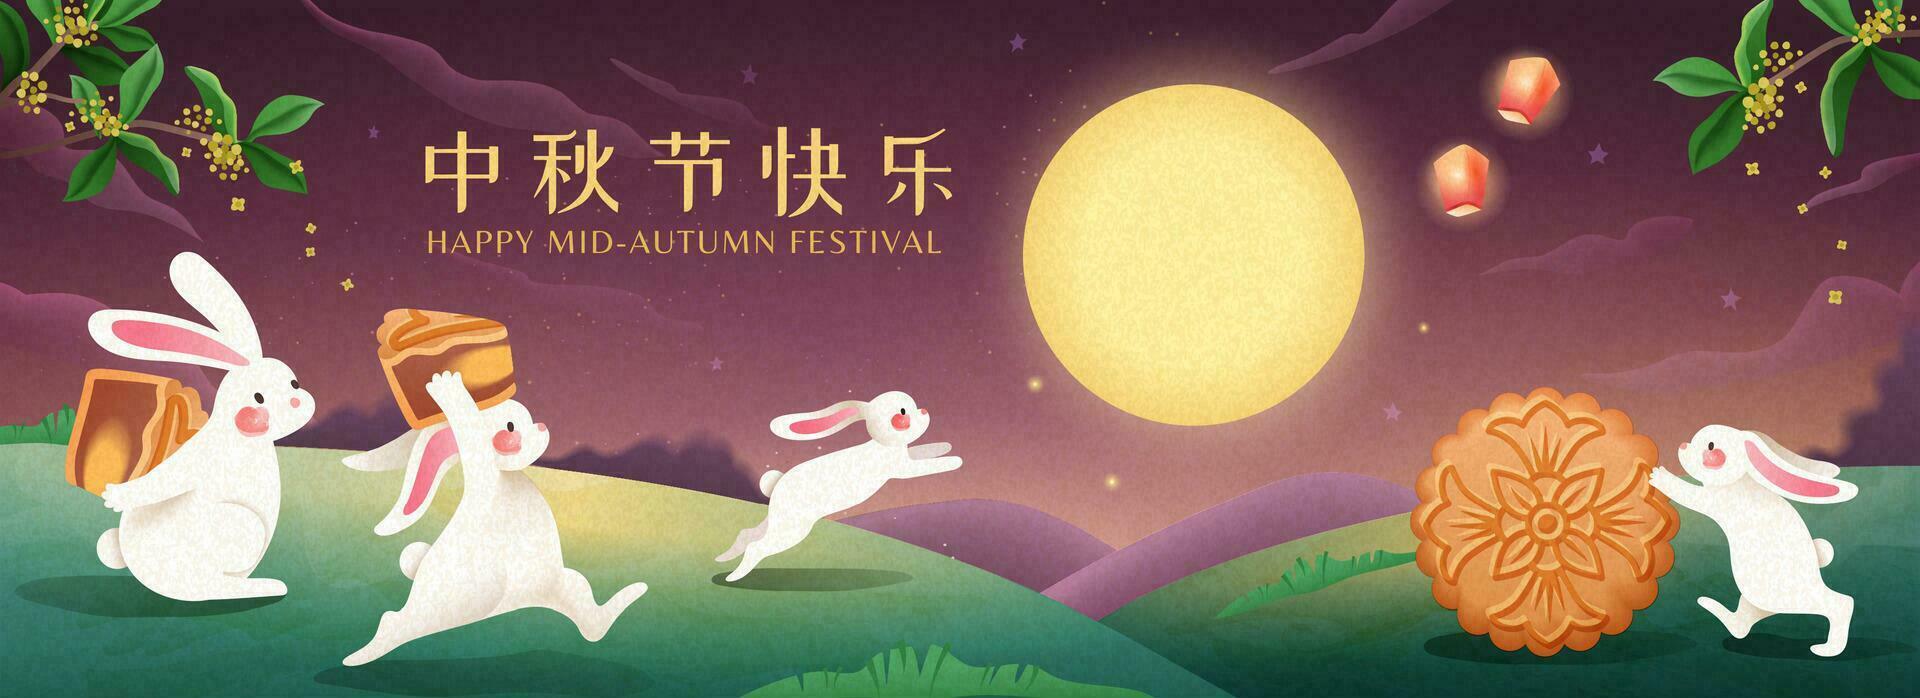 linda medio otoño festival bandera con jade Conejo que lleva Pastel de luna y admirativo el lleno luna, contento fiesta escrito en chino palabras vector